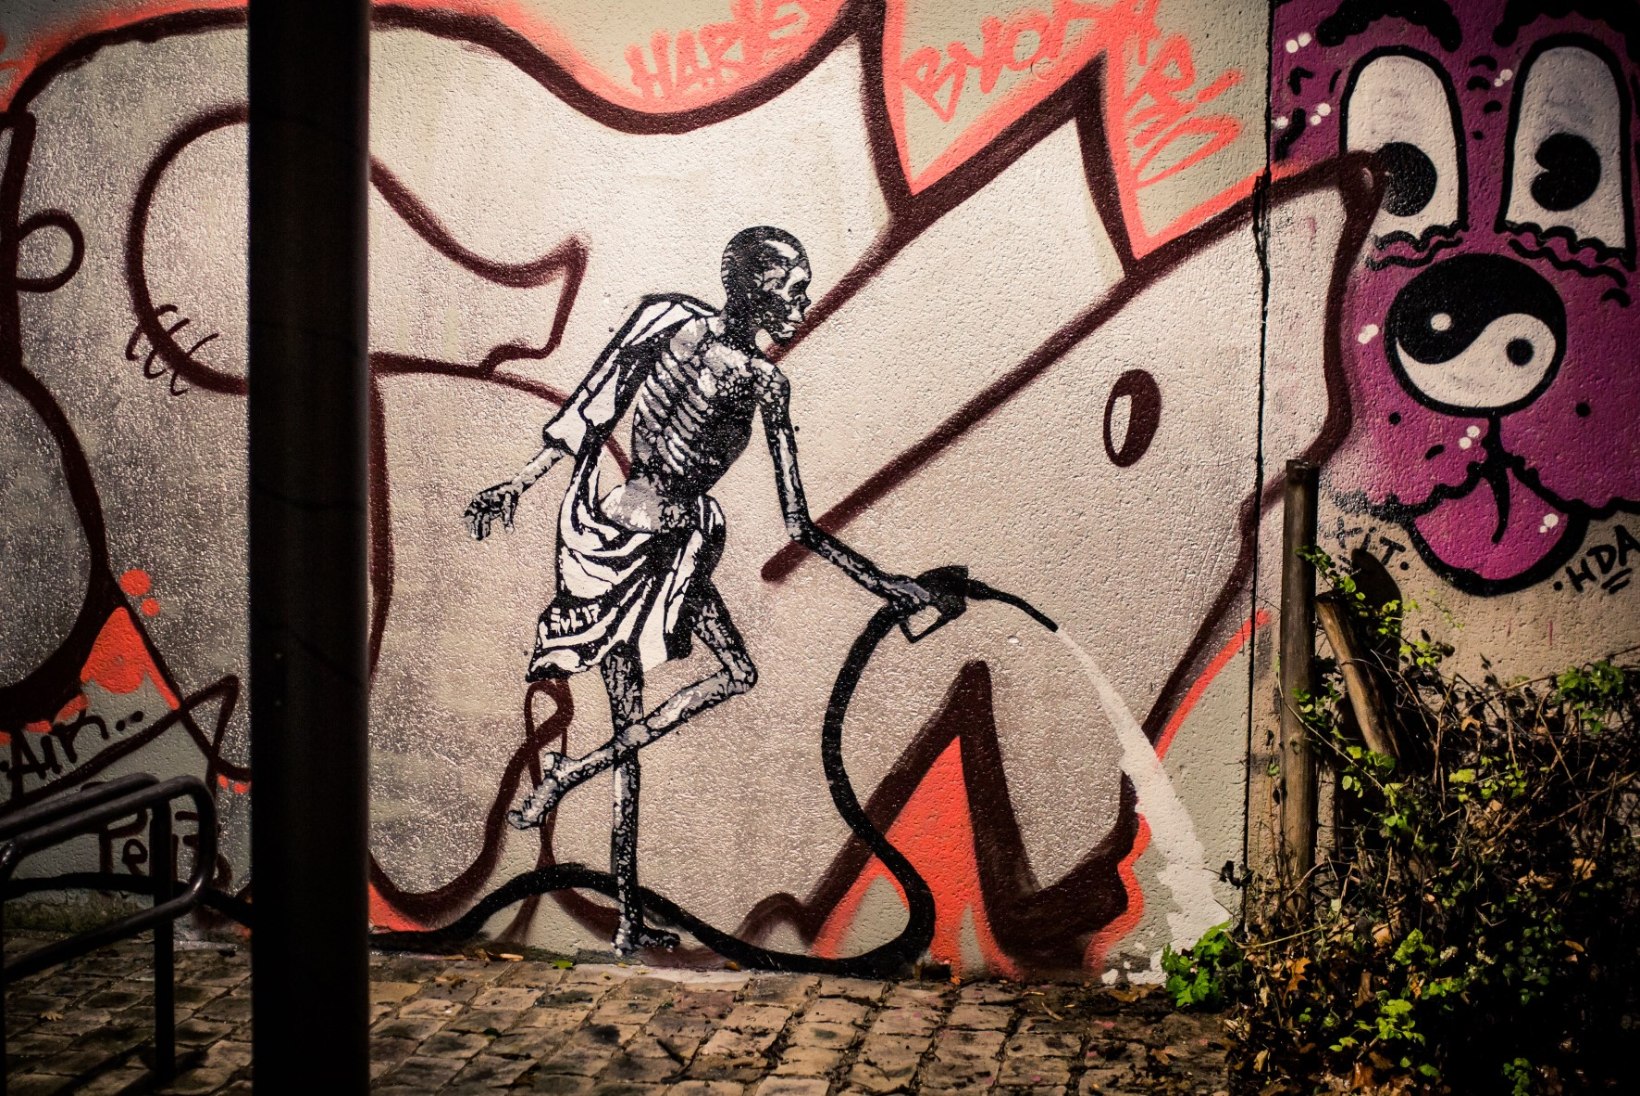 FOTOD | Eesti tänavakunstnik Edward von Lõngus vallutas Pariisi uute teostega